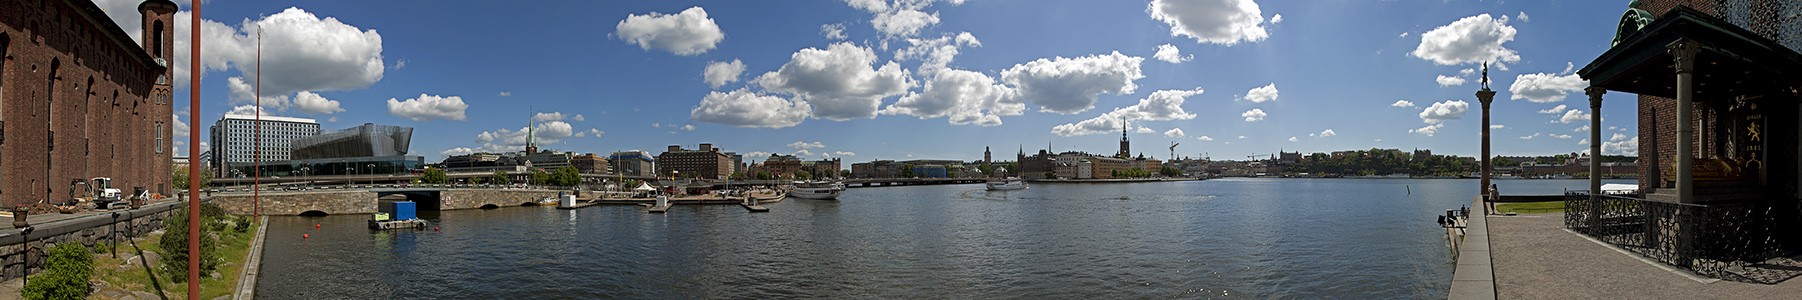 Riddarfjärden (Mälaren, Mälarsee) Stockholm